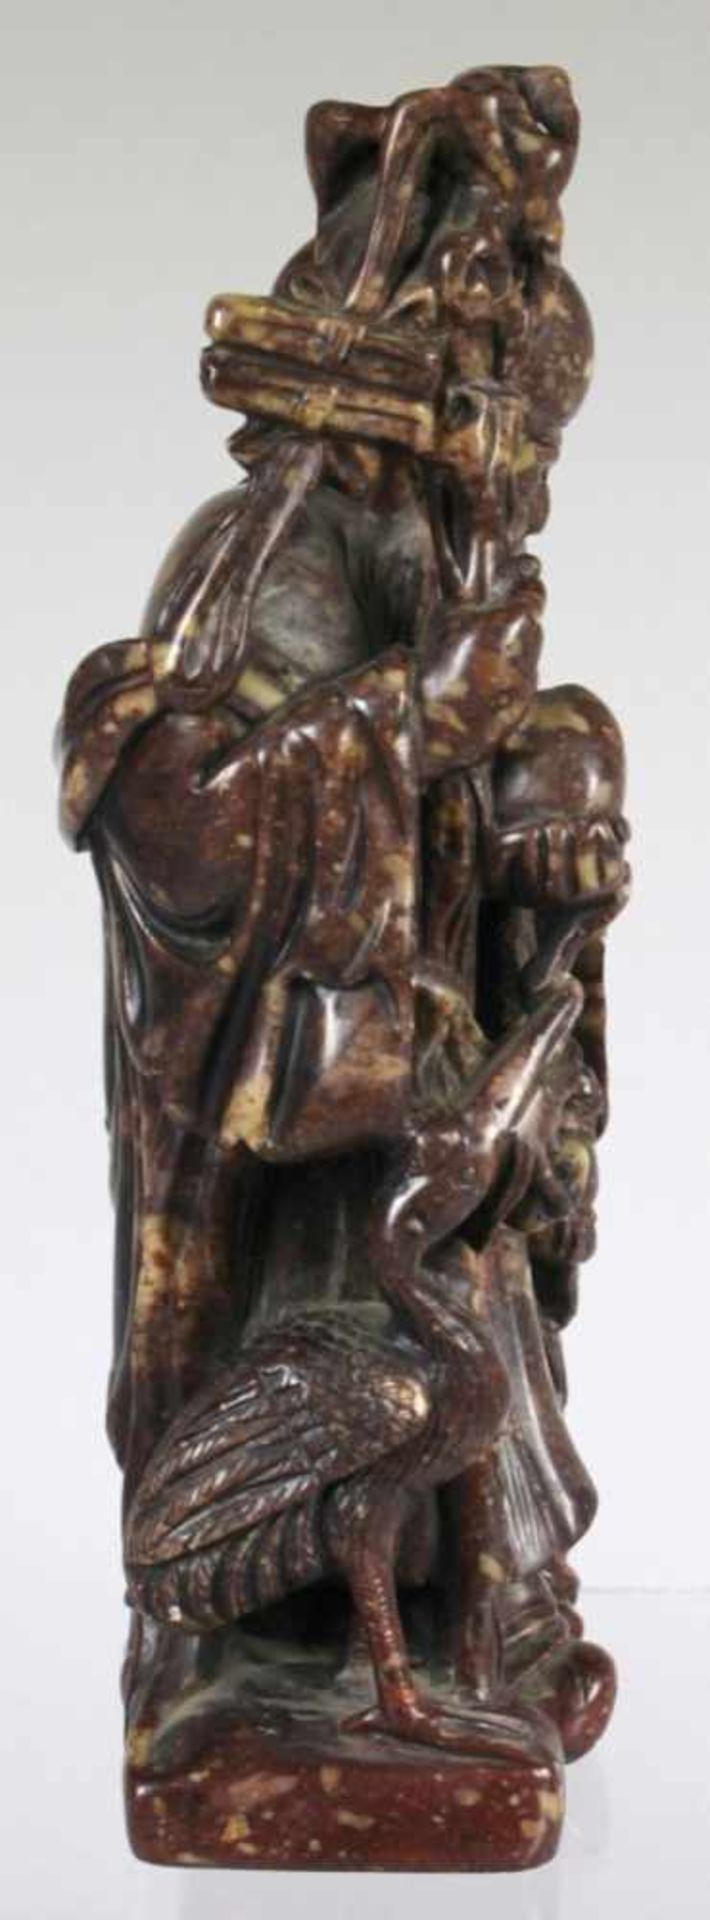 Stein-Schnitzerei, "Luohan mit Kind", China, 19. Jh., vollplastische, stehende Darstellung - Bild 2 aus 4